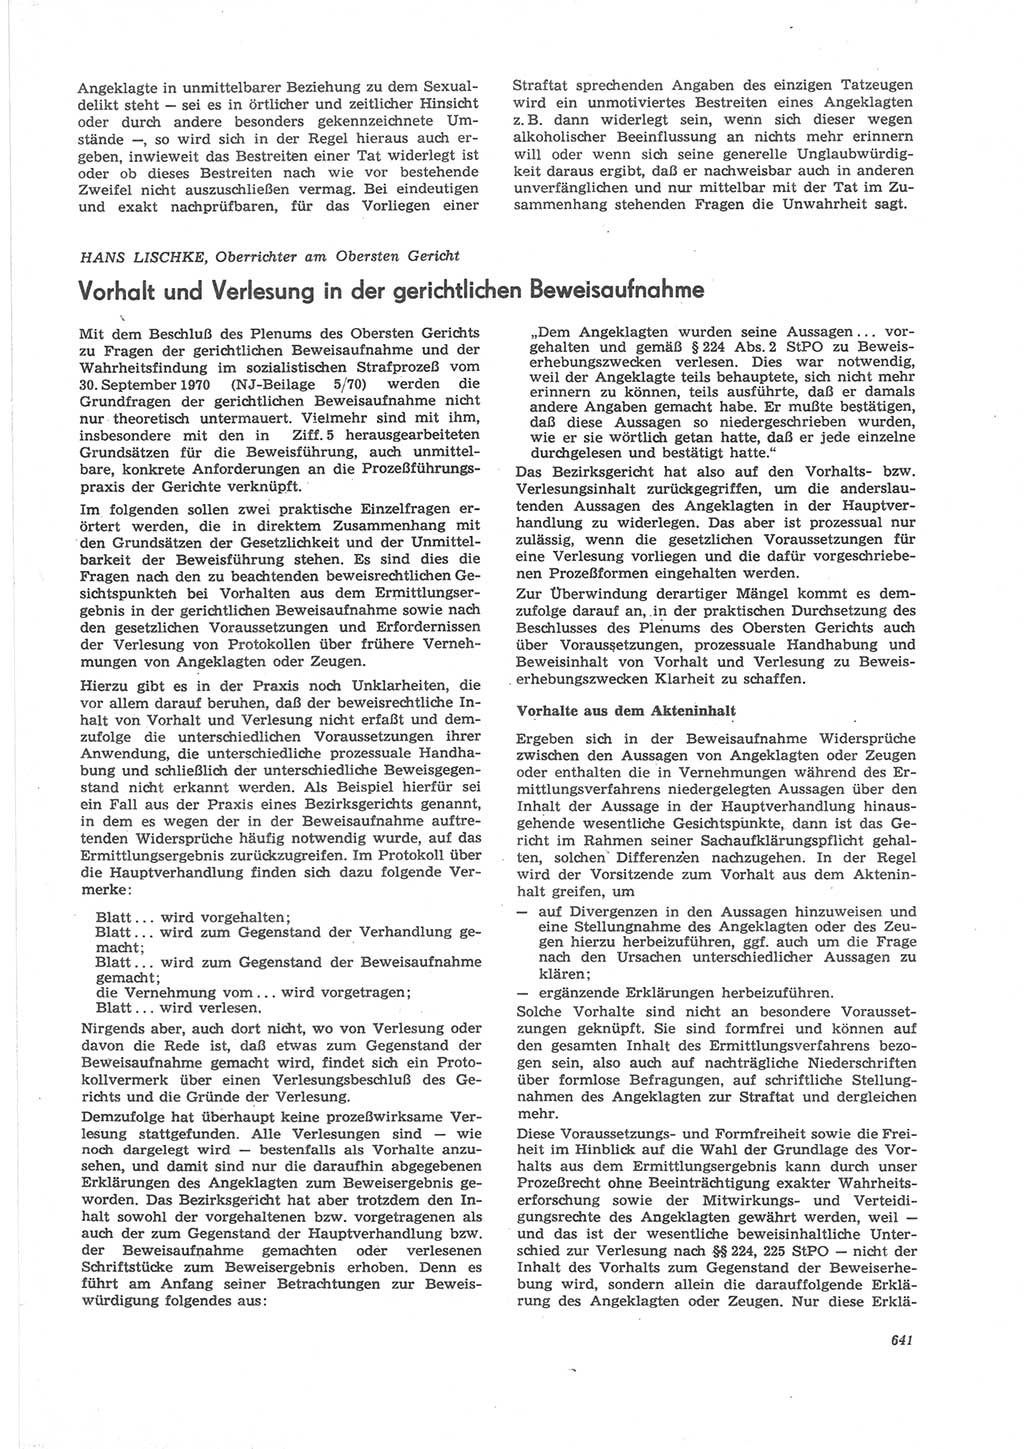 Neue Justiz (NJ), Zeitschrift für Recht und Rechtswissenschaft [Deutsche Demokratische Republik (DDR)], 24. Jahrgang 1970, Seite 641 (NJ DDR 1970, S. 641)